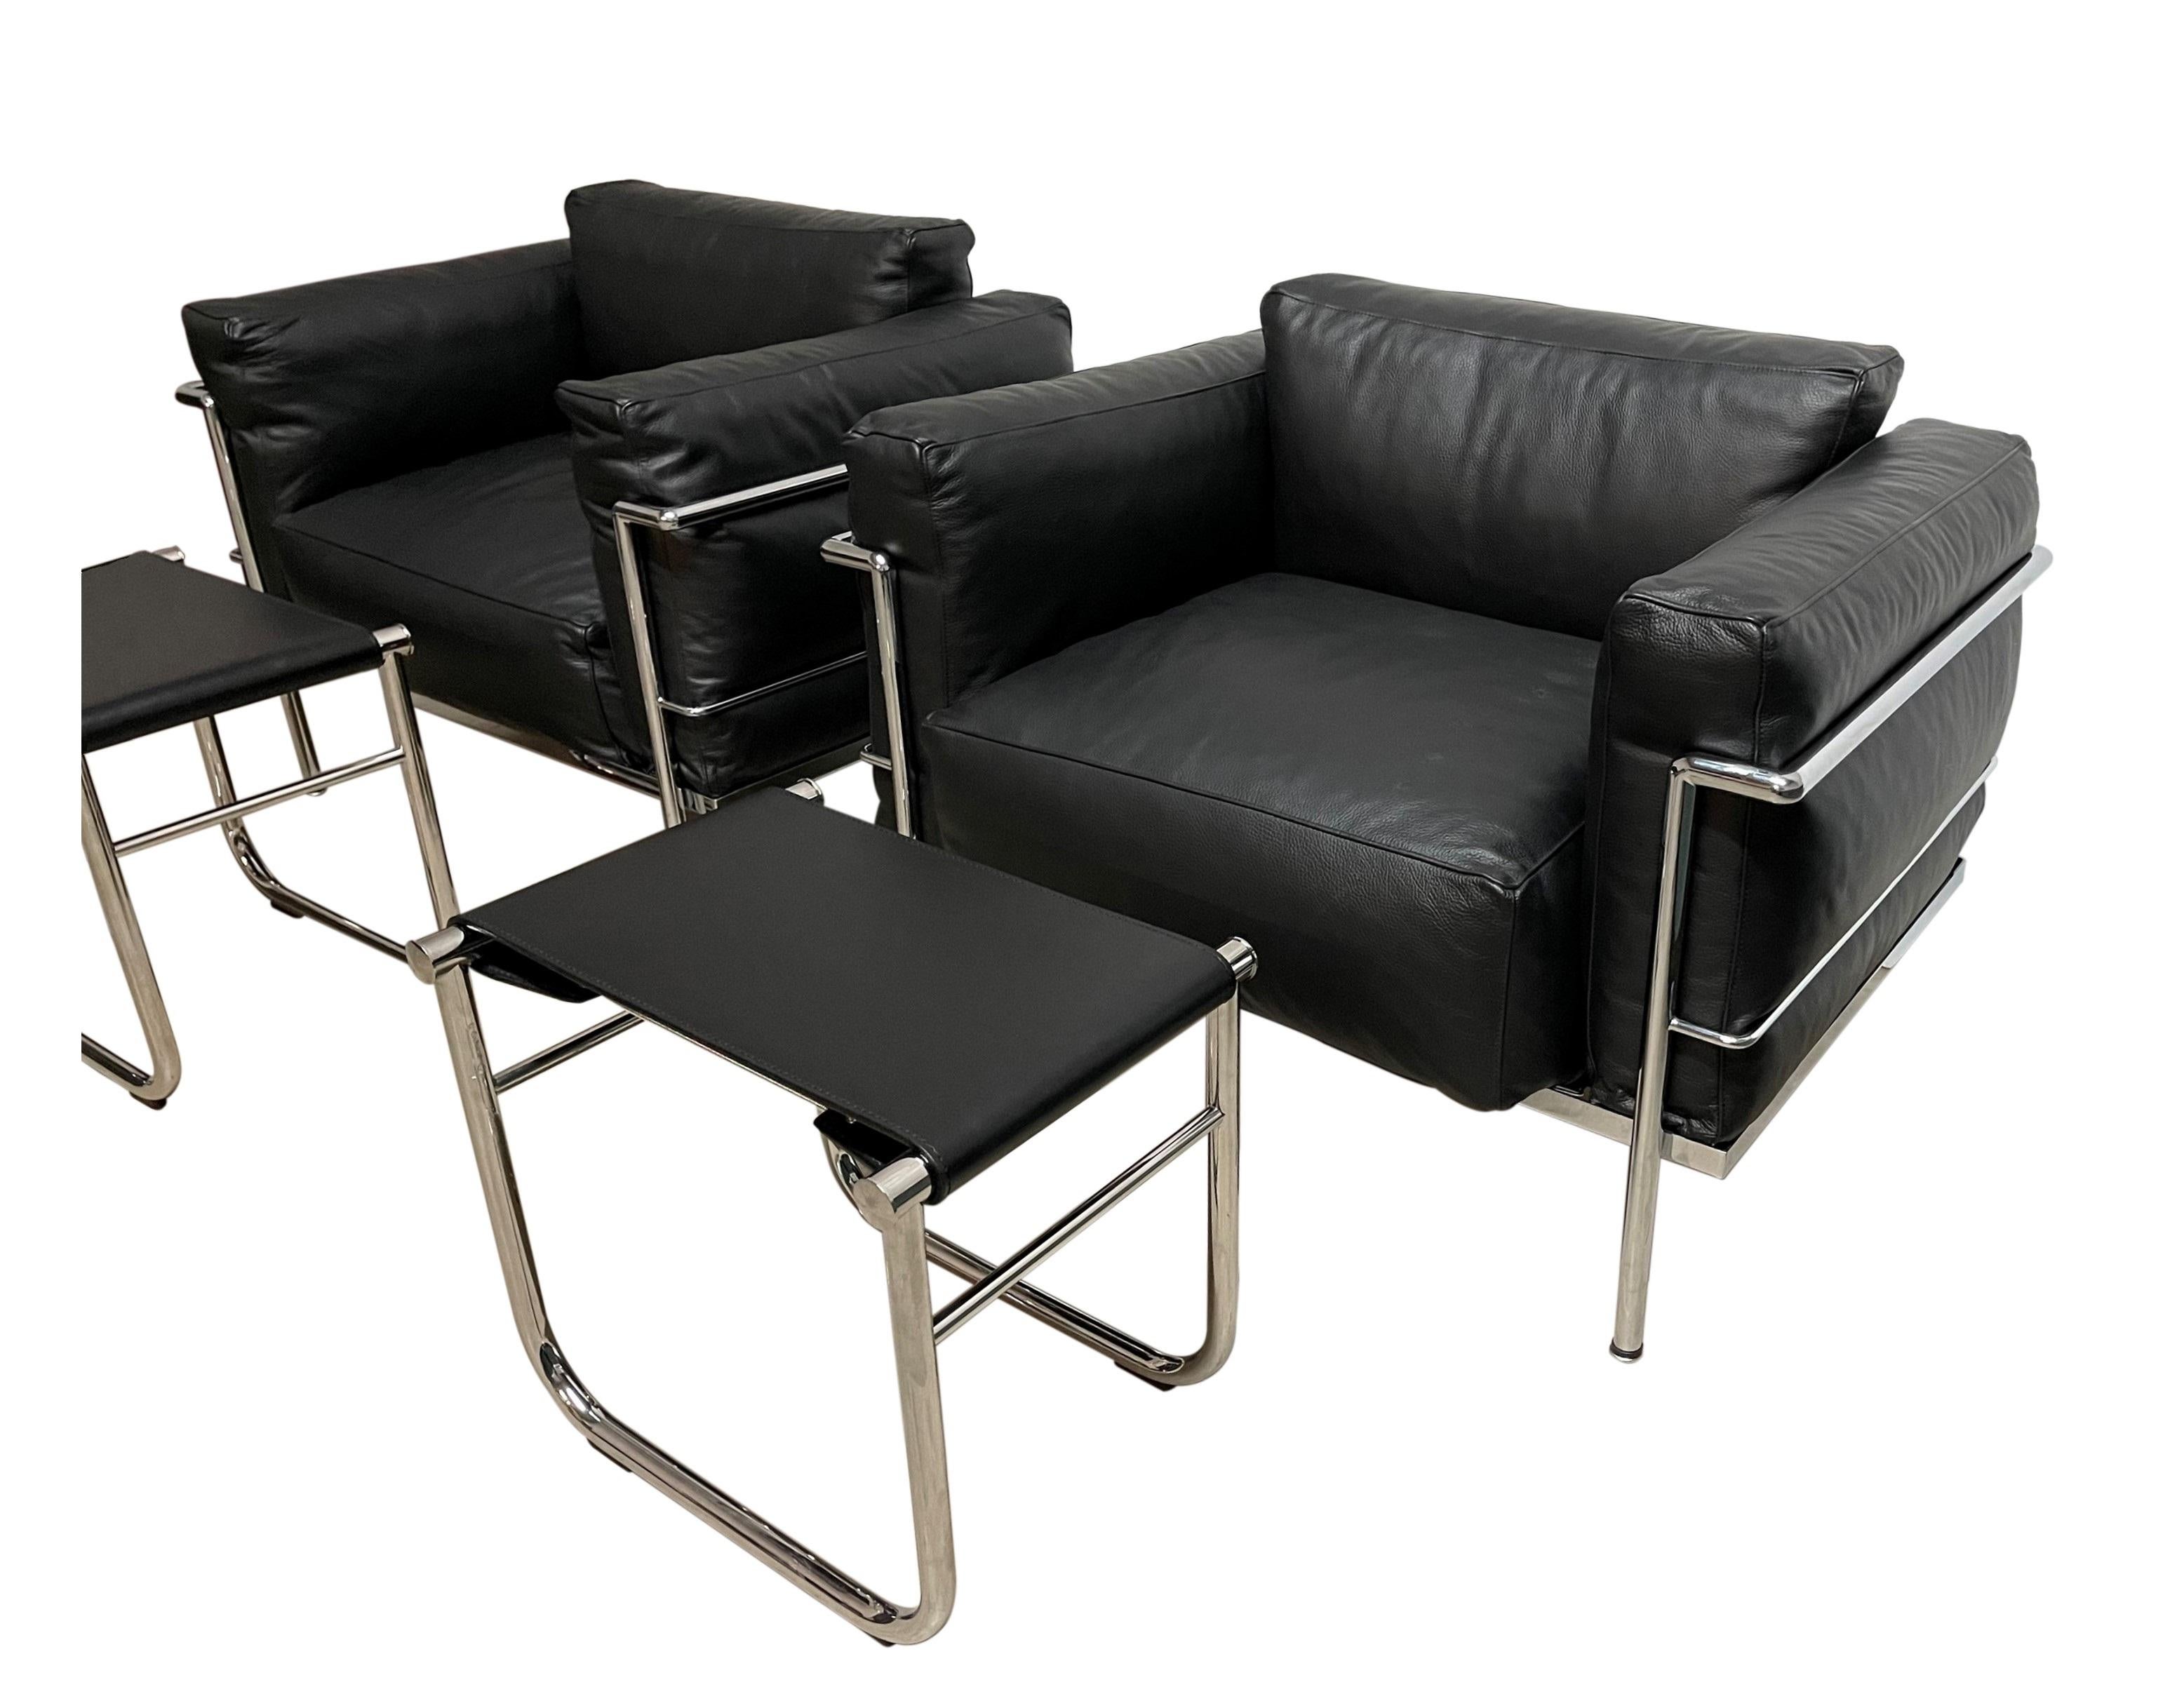 Les chaises minimalistes et incroyablement confortables de la série 